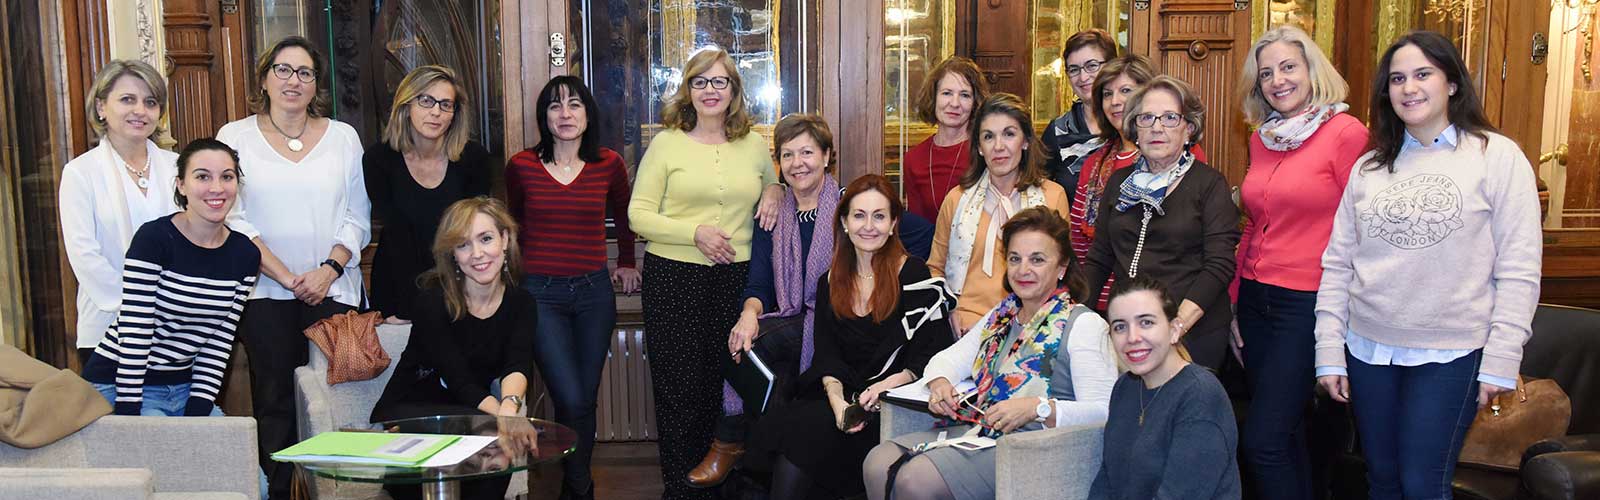 Mesa redonda sobre Mujeres, Ciencia y Nutrición